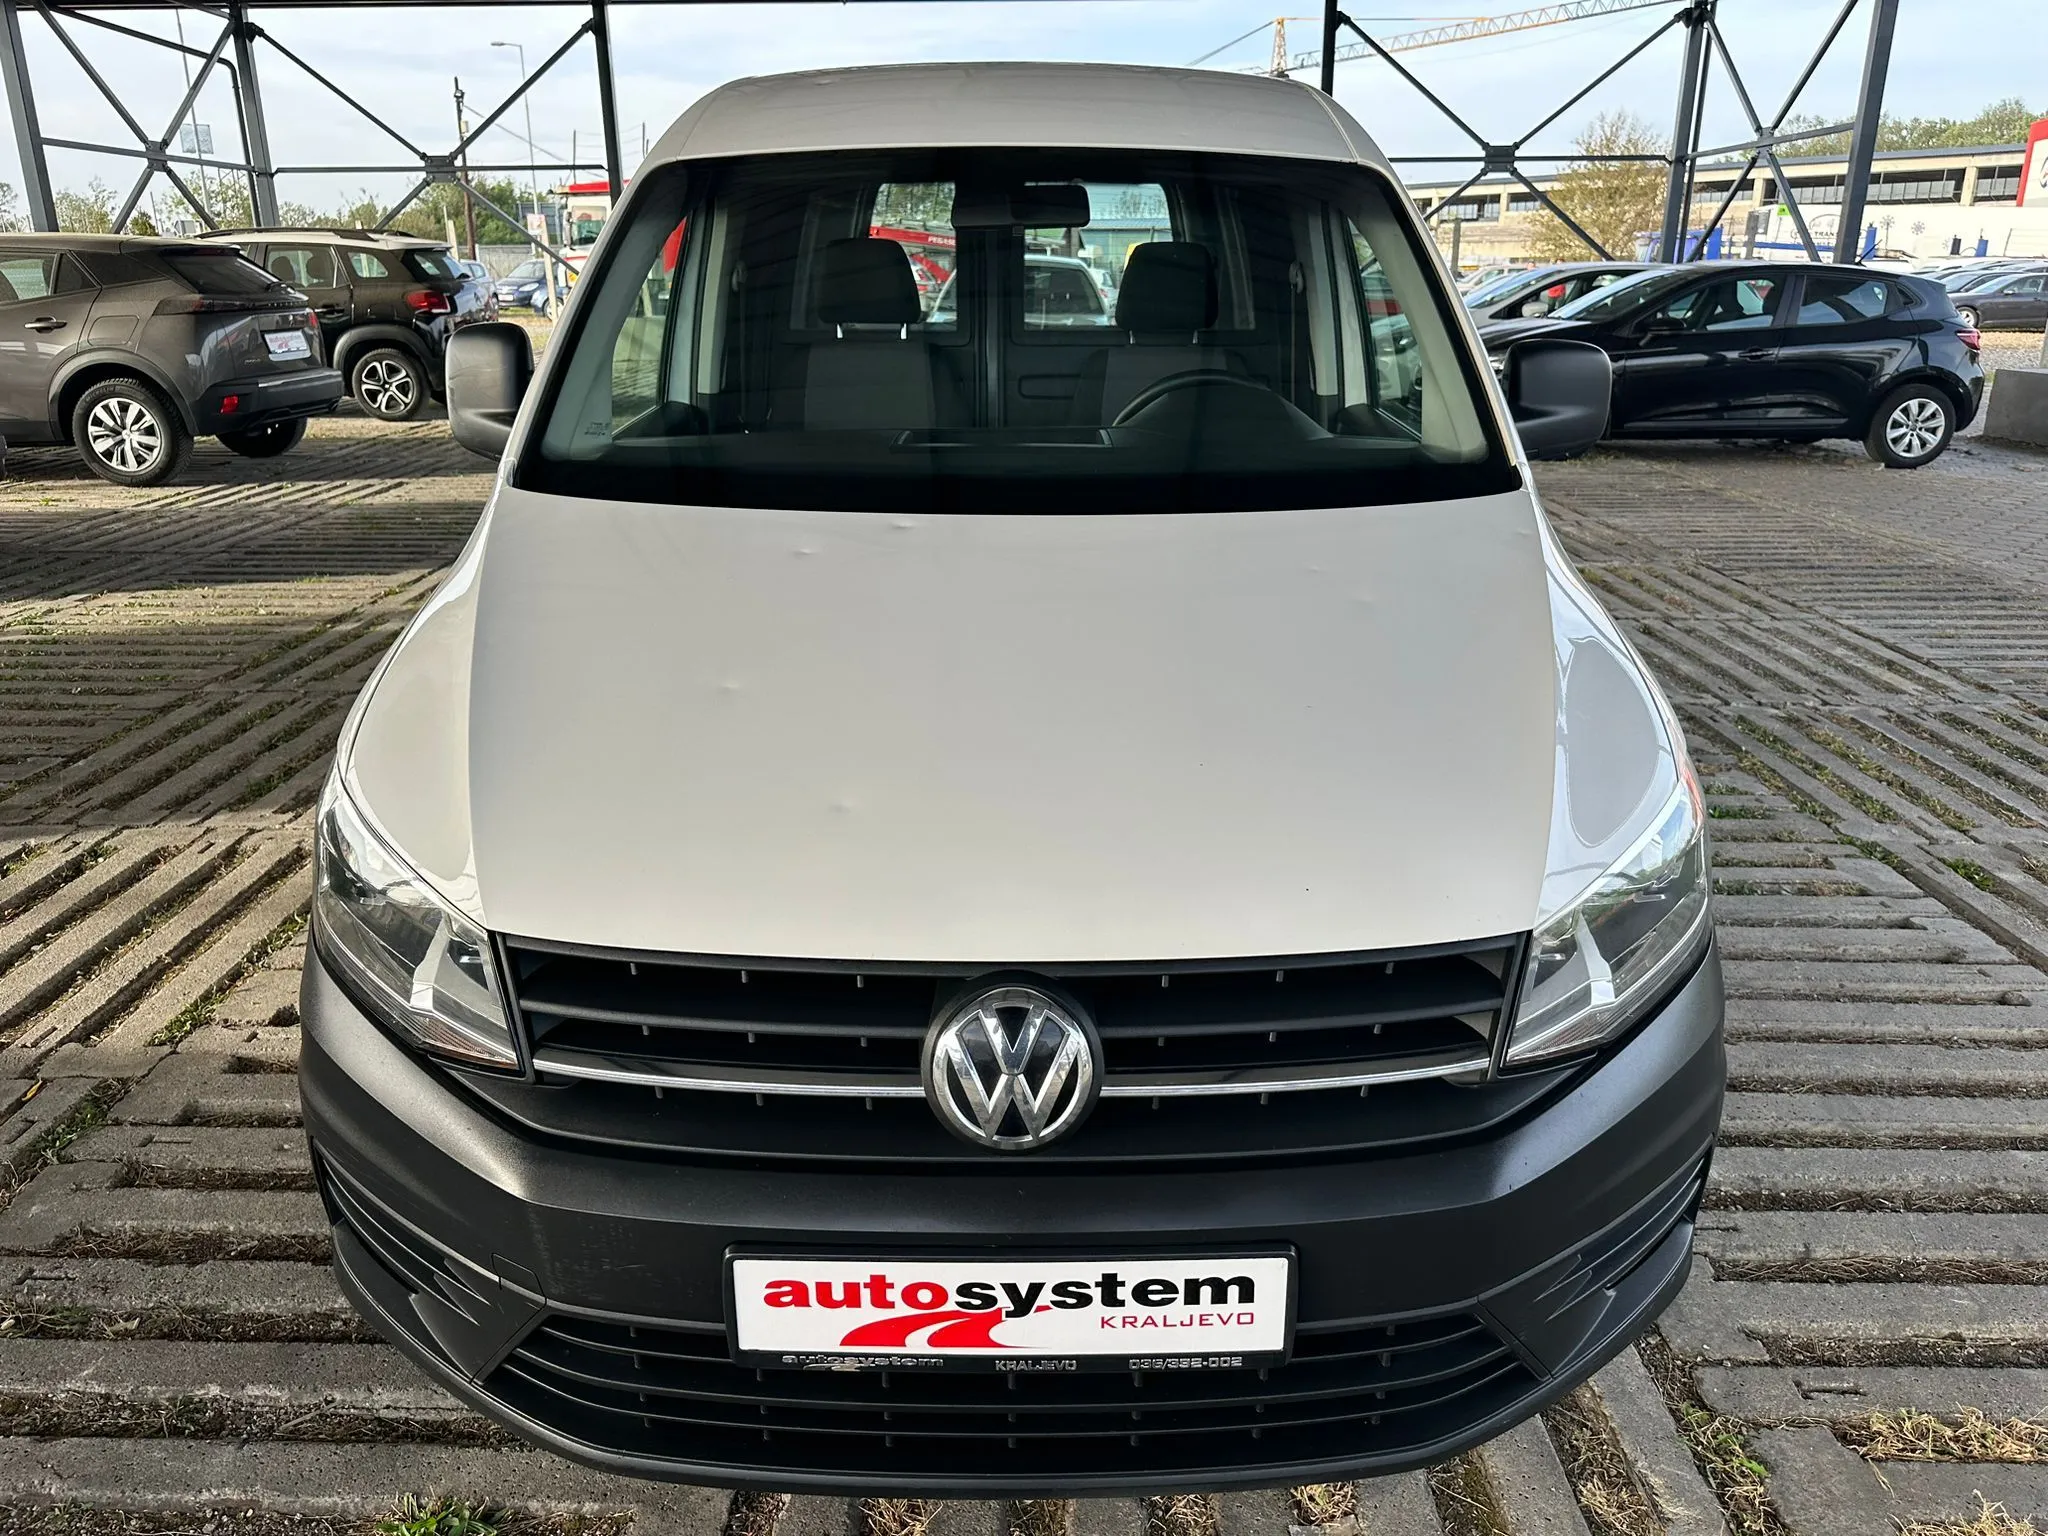 Volkswagen VW Caddy  Image 3